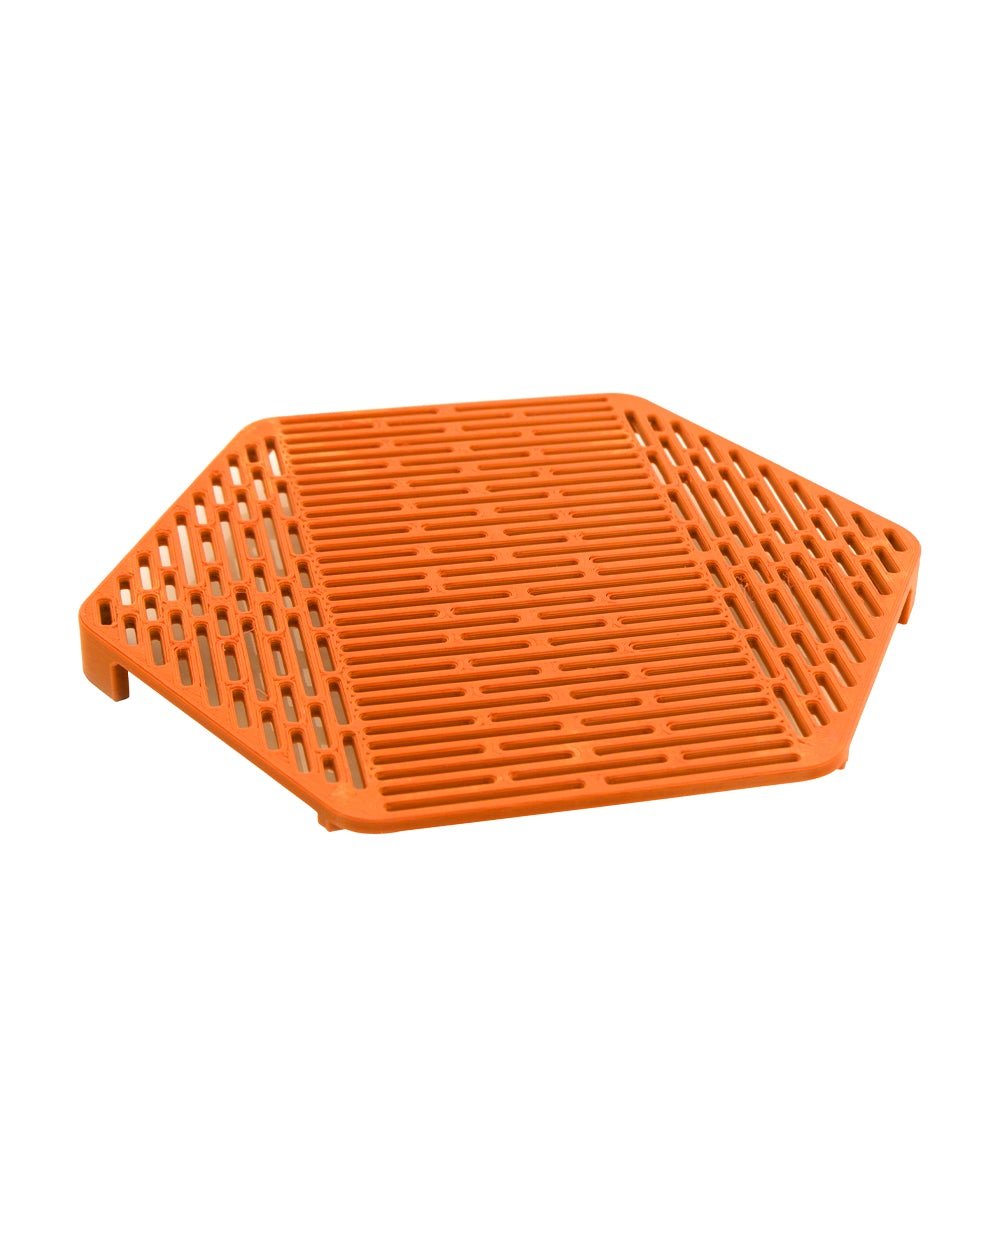 KING KONE | Orange Vibration Pre-Rolled Cones Filling Machine 84/98/109mm | Fill 169 Cones Per Run - 7